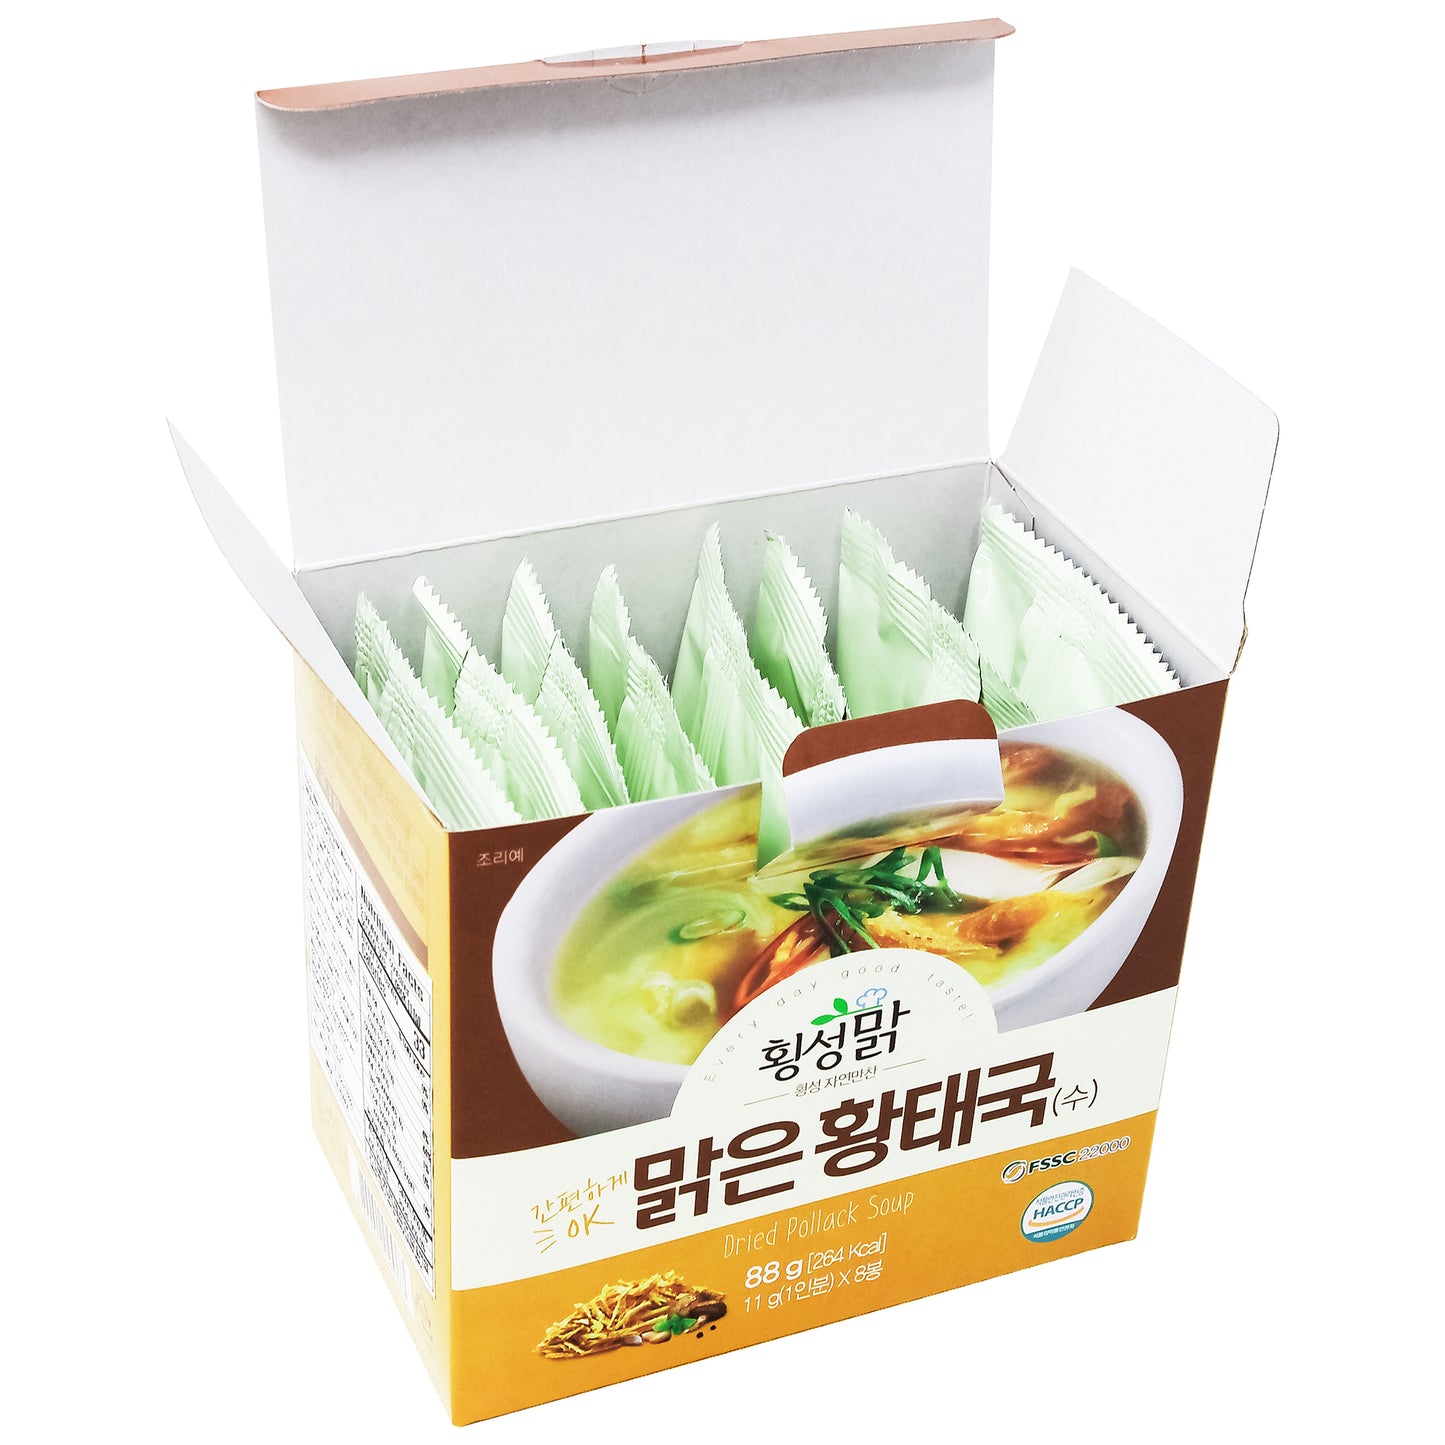 Korean Dried Pollack, HwangTae Stew Cube, 88g (11gx8ea), 8 Servings, Korean Instant Food HMR, Soup, Healthy Food, K-Food